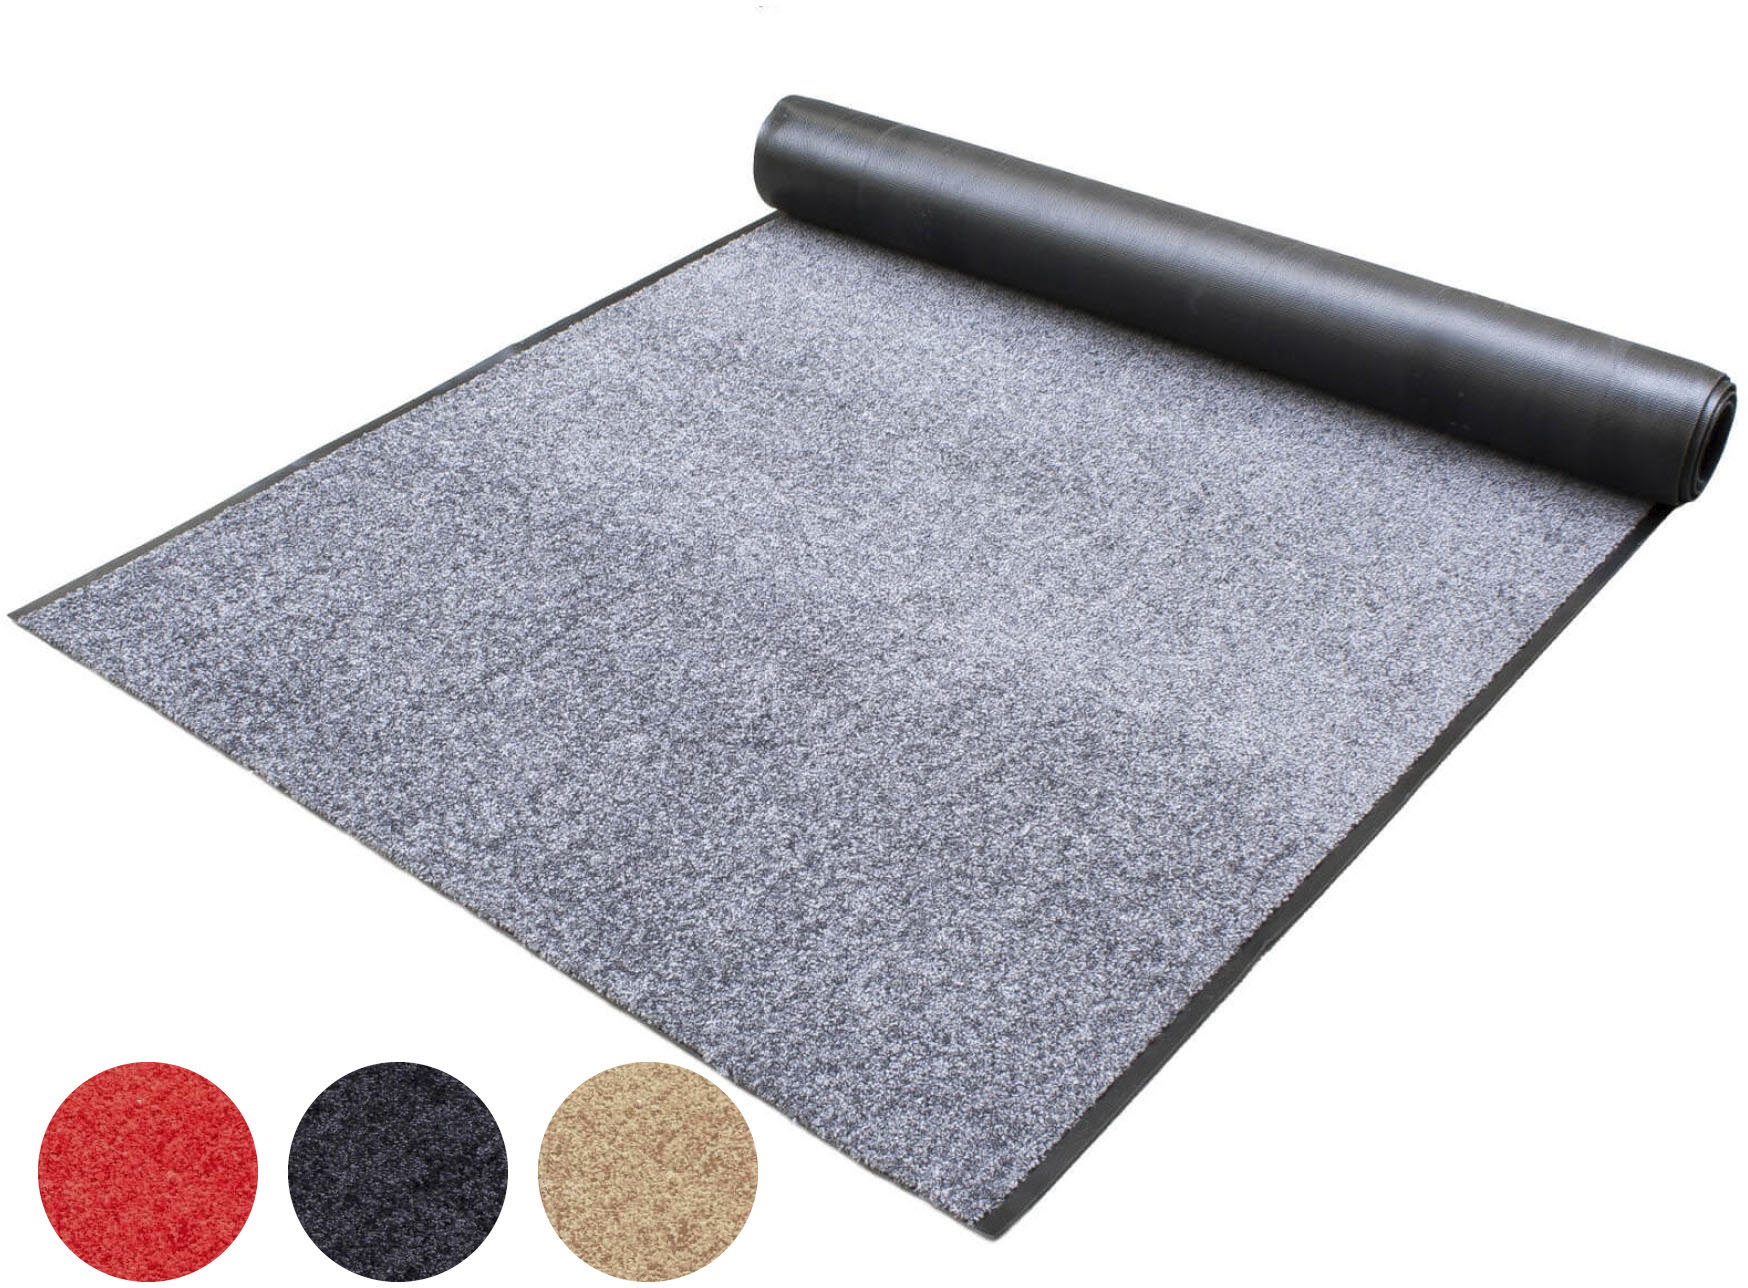 Schmutzfang-Teppich-Läufer Meterware WASH and CLEAN – Grau, 0,90m x 3,50m, Waschbarer, Rutschfester Küchenläufer, Wasserabsorbierende Sauberlauf-Matte